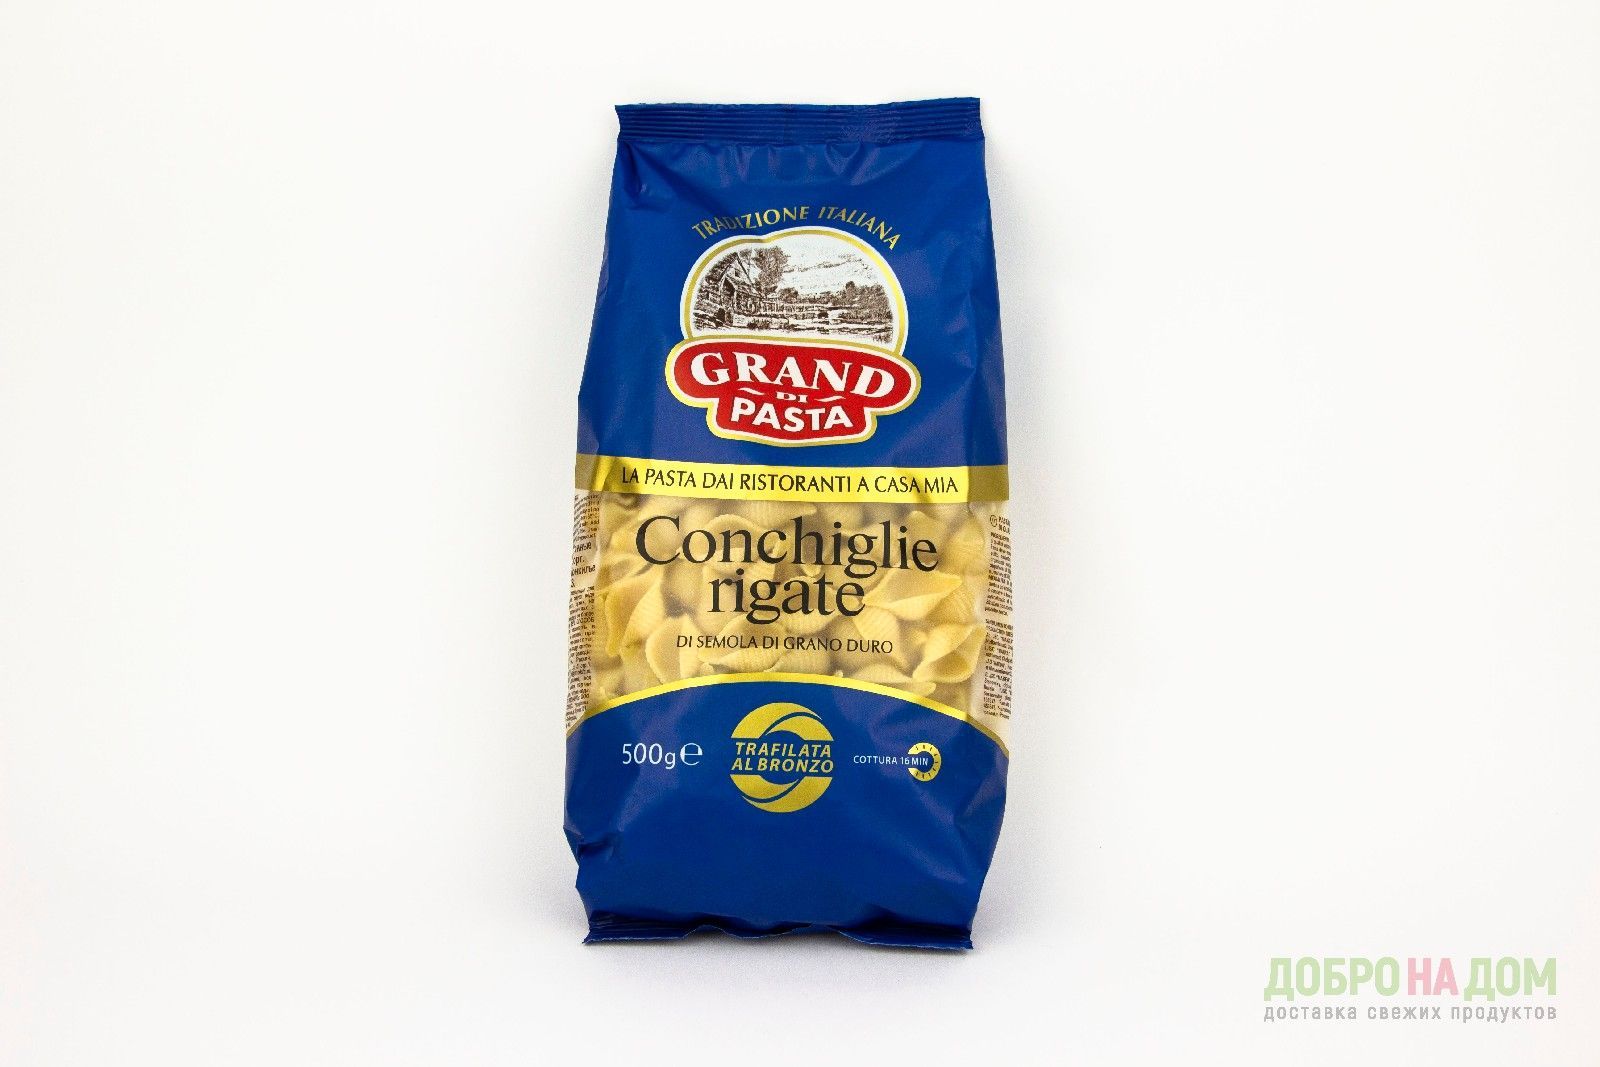 Grand di Pasta Conchiglie rigate высший сорт 500 г